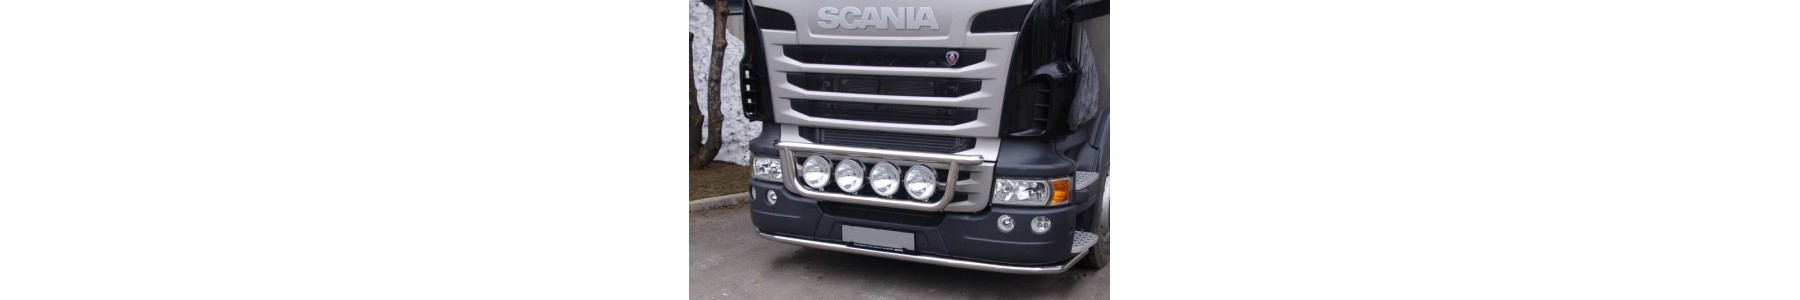 Rampe de sous pare choc et rampe sous carénage pour Scania R avant 2009.22h22: Vente accessoires tuning poids lourd